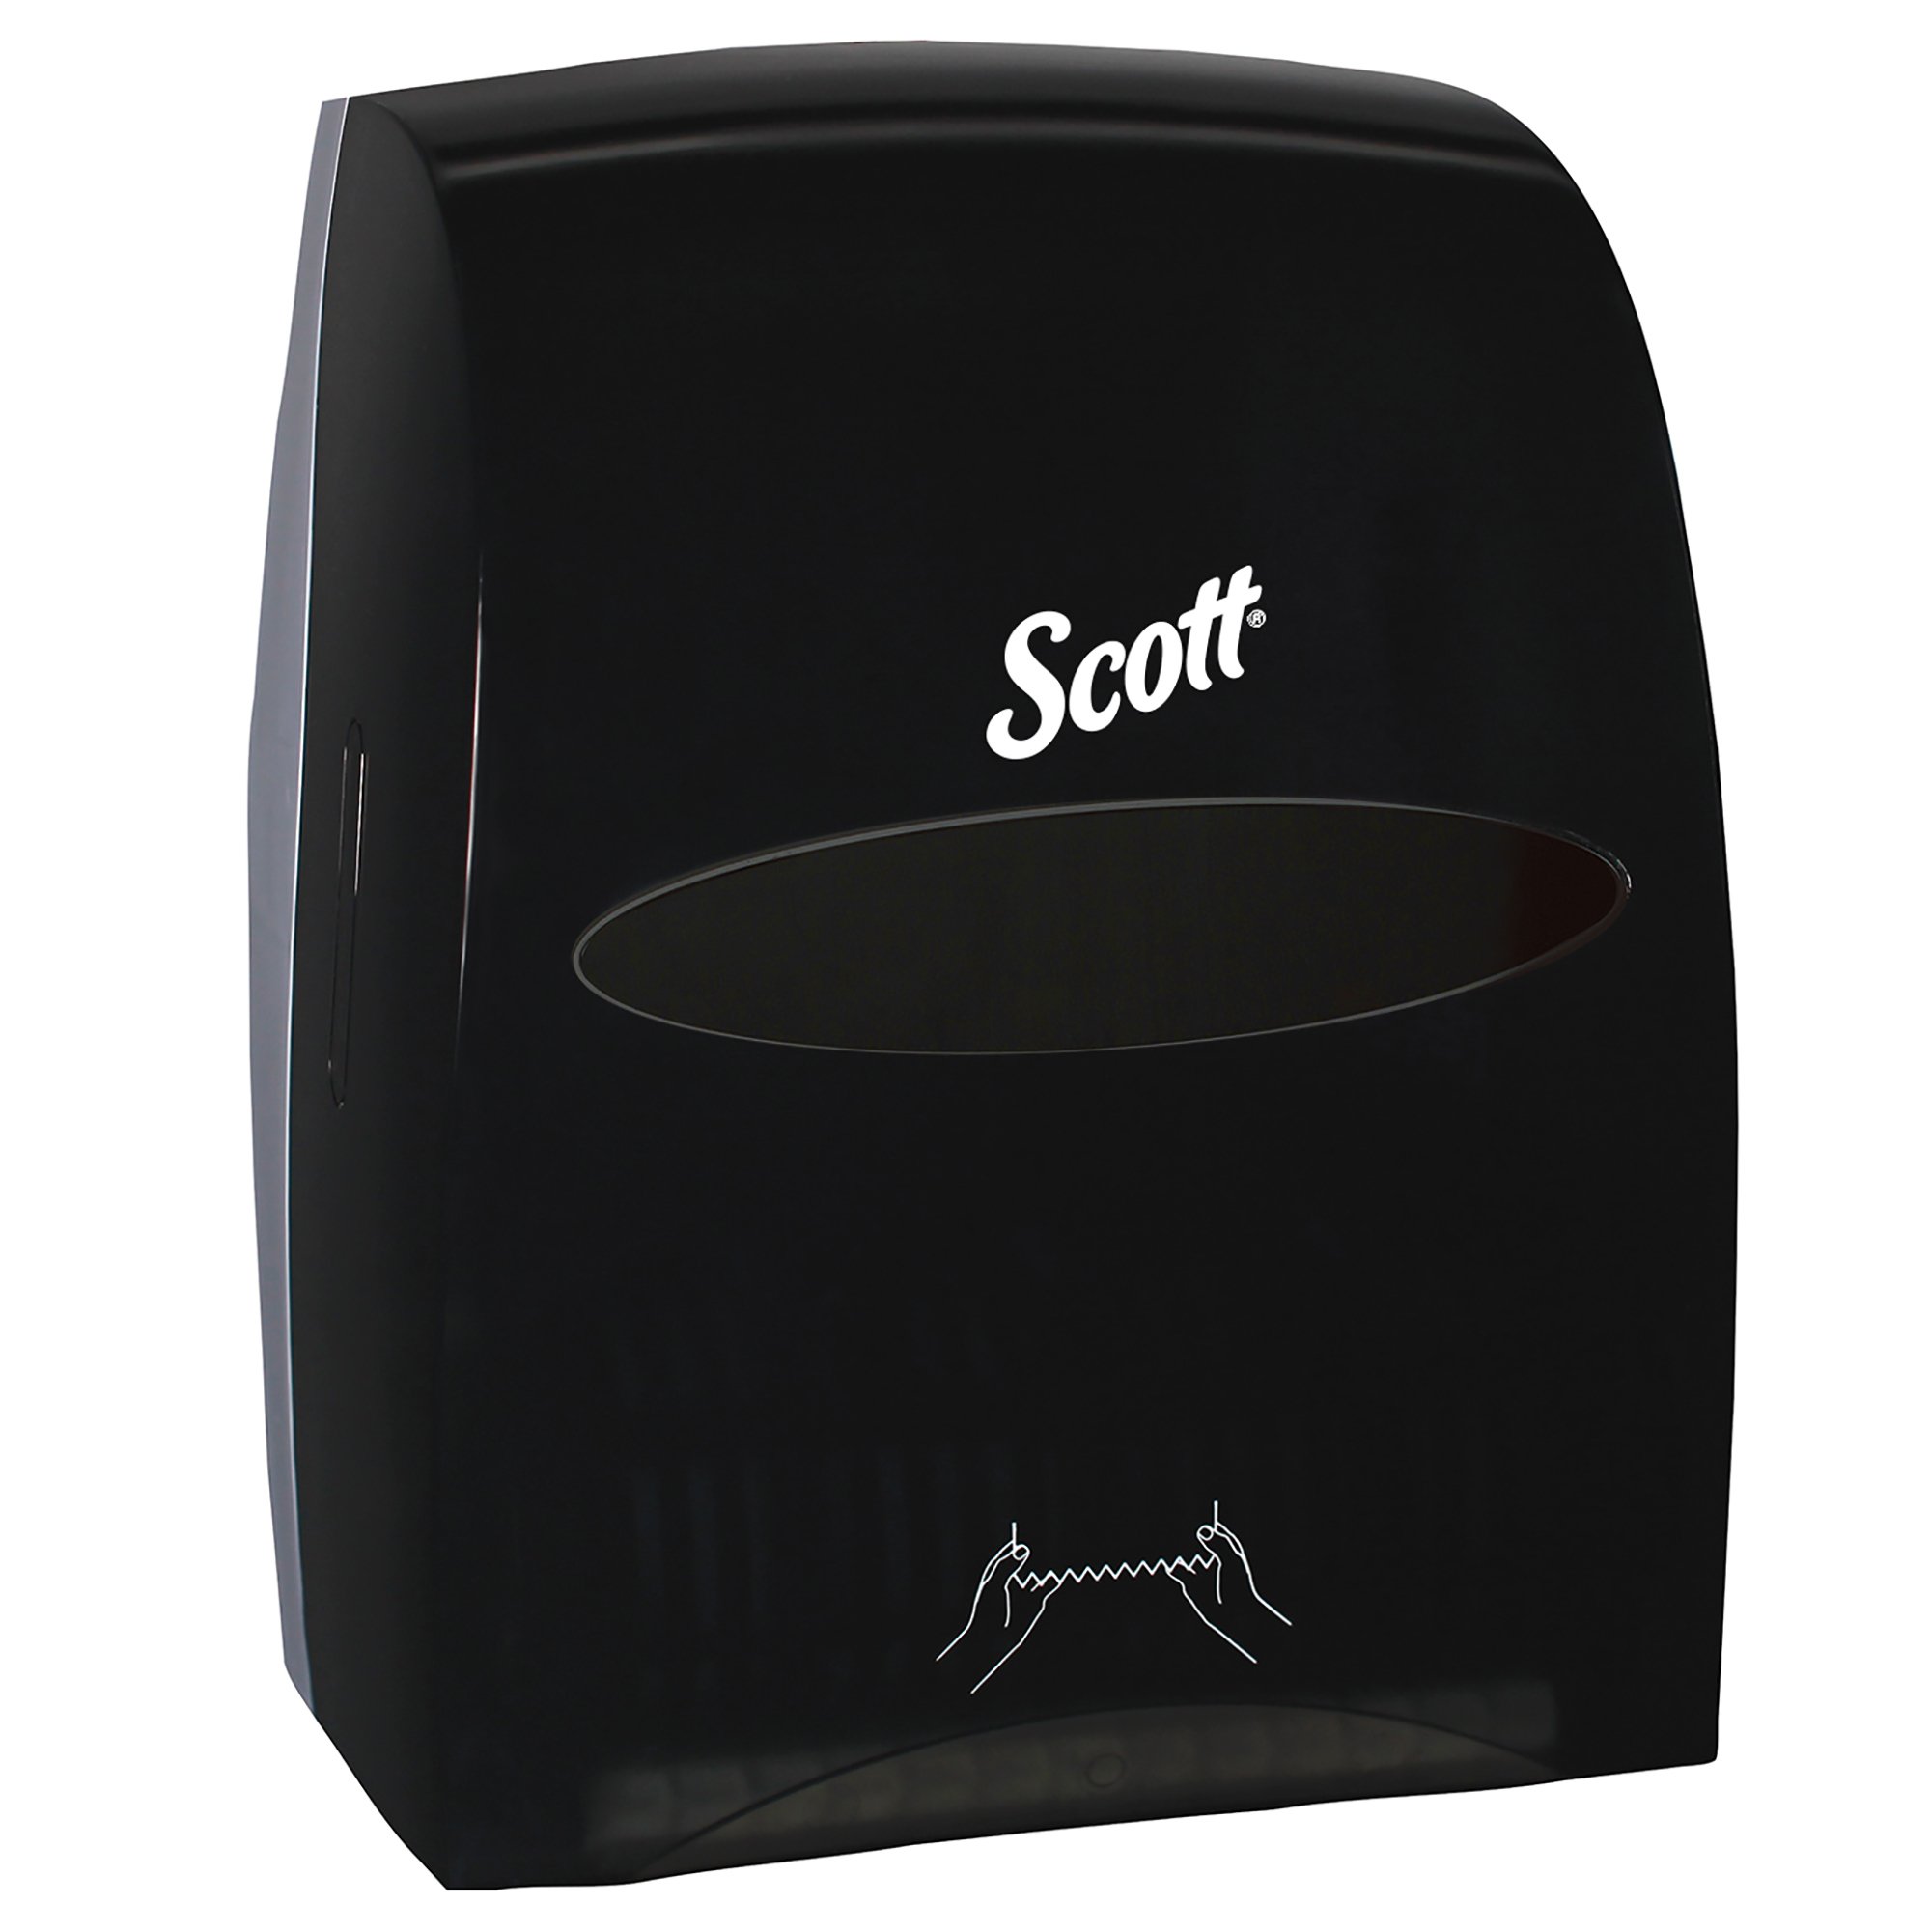 Scott® Essential  Hard Roll Towel Dispenser - Black, Manual, 12.63" x 16.13" x 10.2"